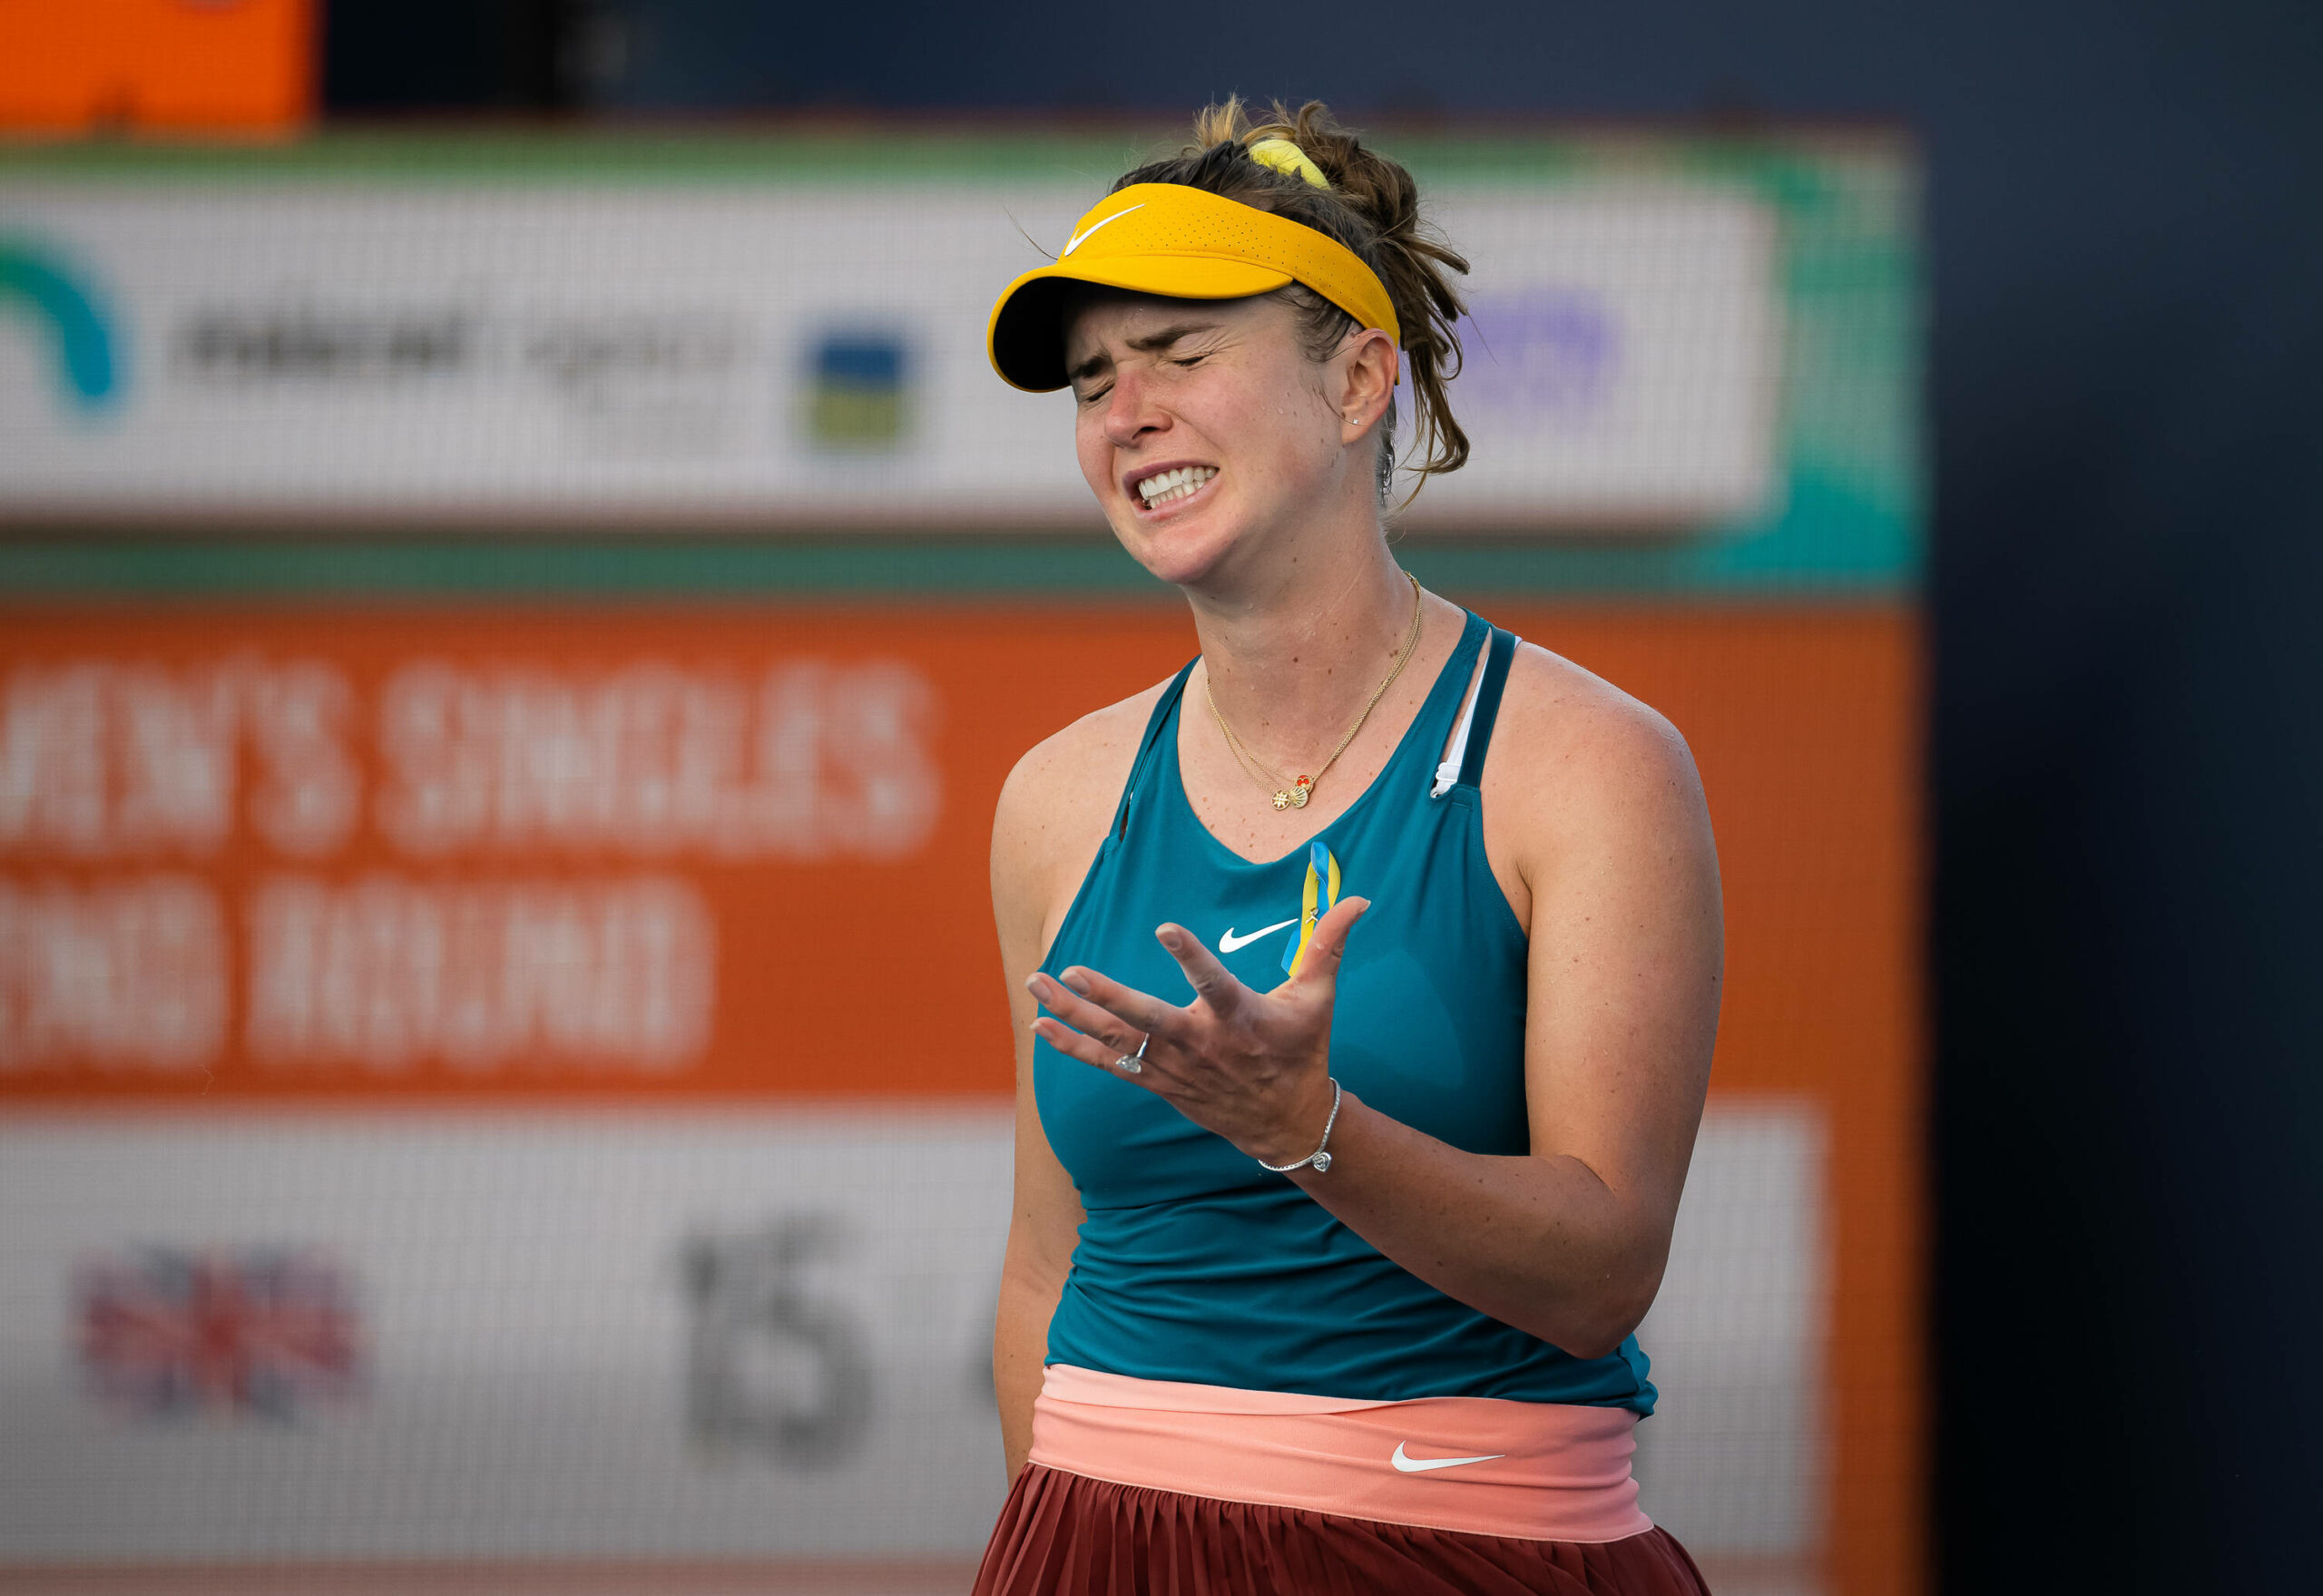 Die ukrainische Tennisspielern Elina Svitolina legt aufgrund des Krieges in ihrem Heimatland und der mentalen Belastung eine Pause ein